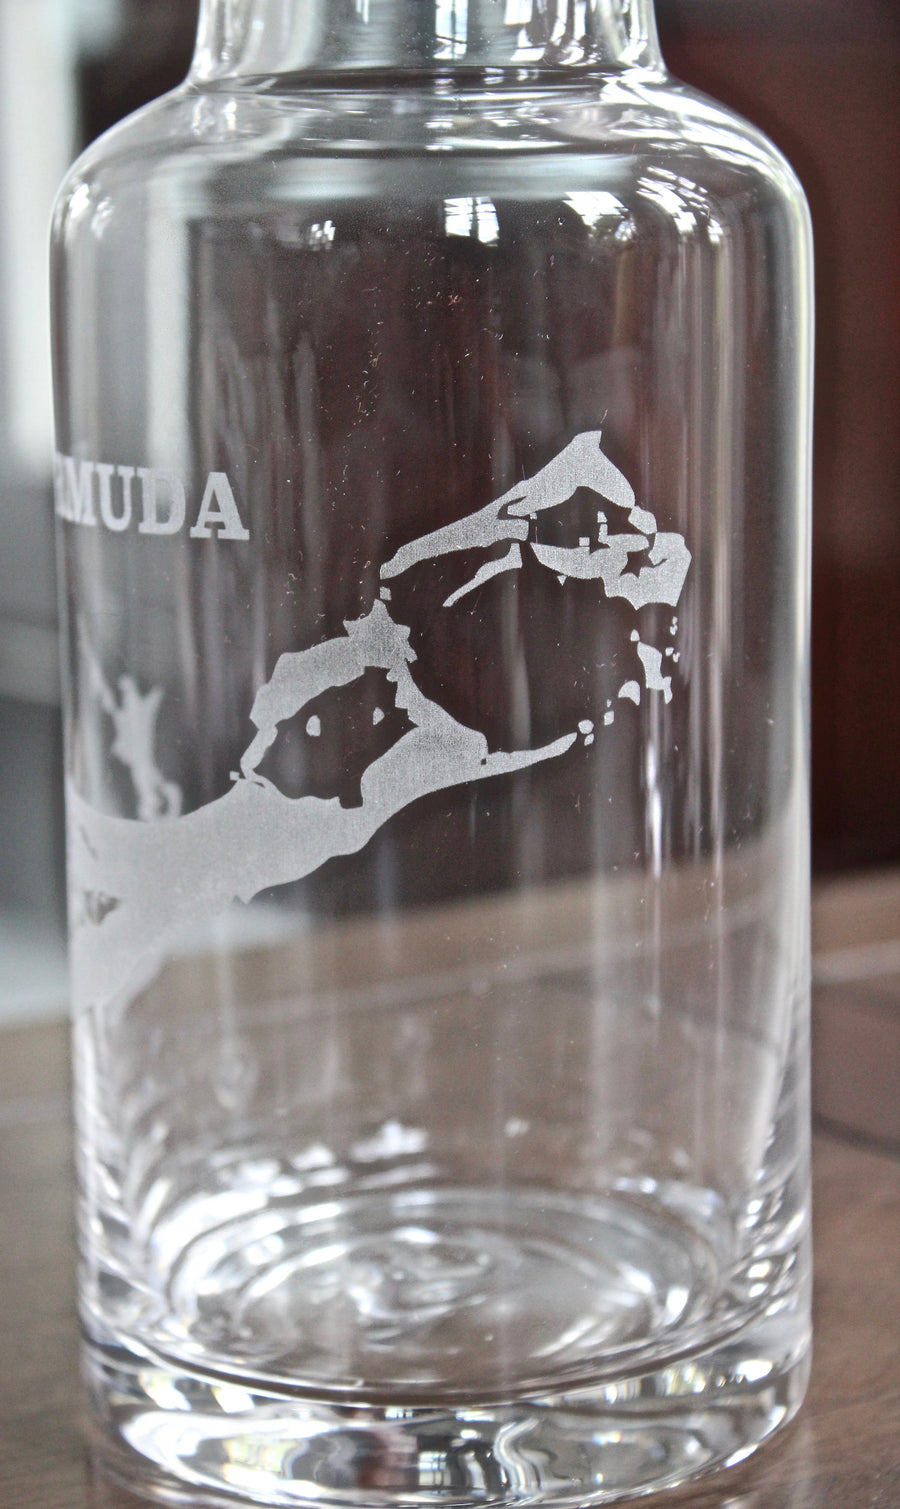 Bermuda Engraved Glass Carafe